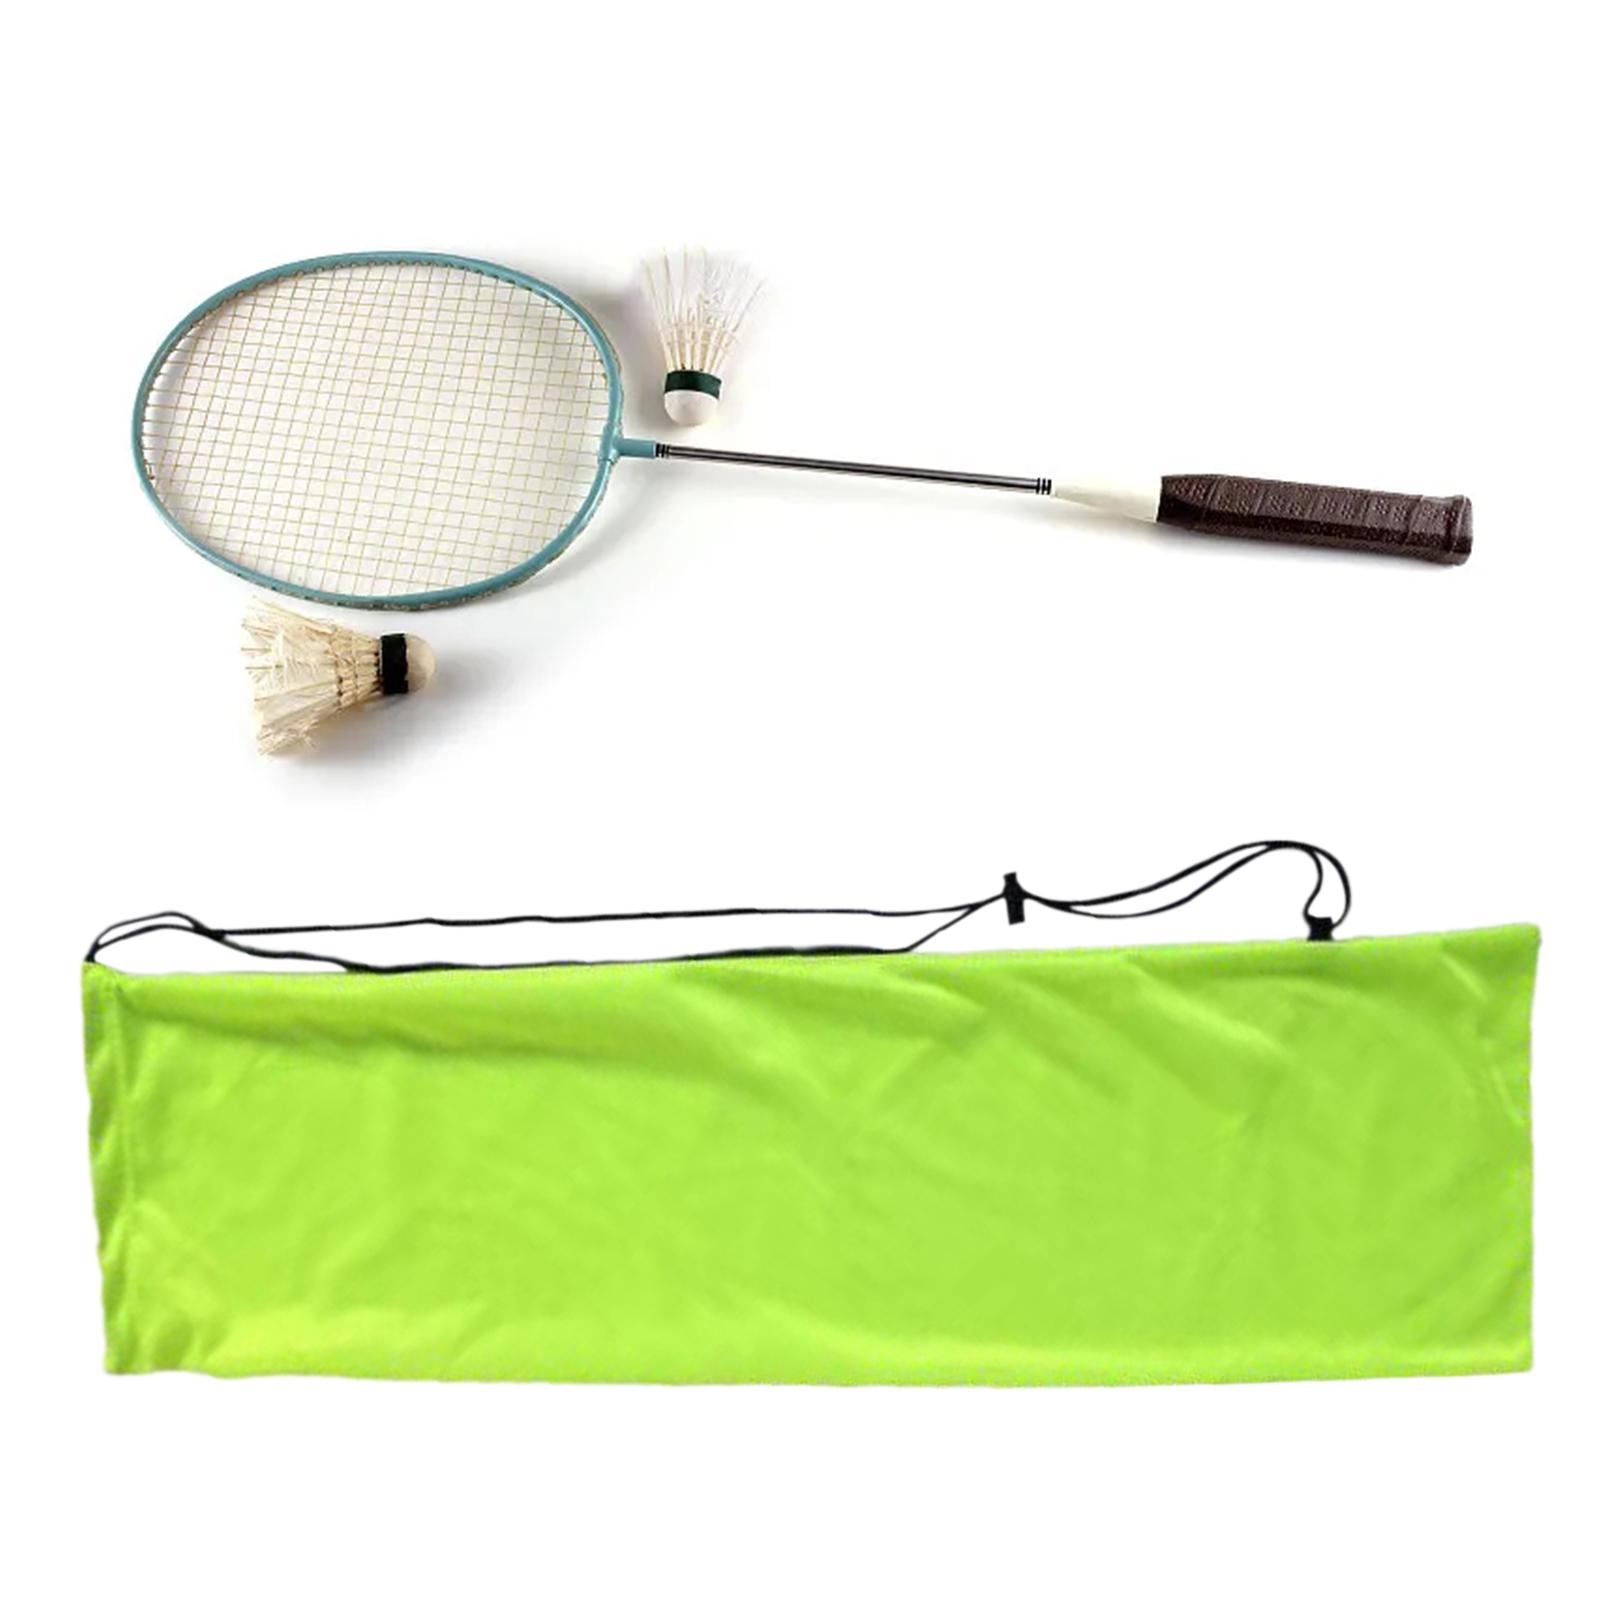 Badminton Racket Bag Racket Shoulder Bag Racket Cover Bag Carrier Carry Case Green